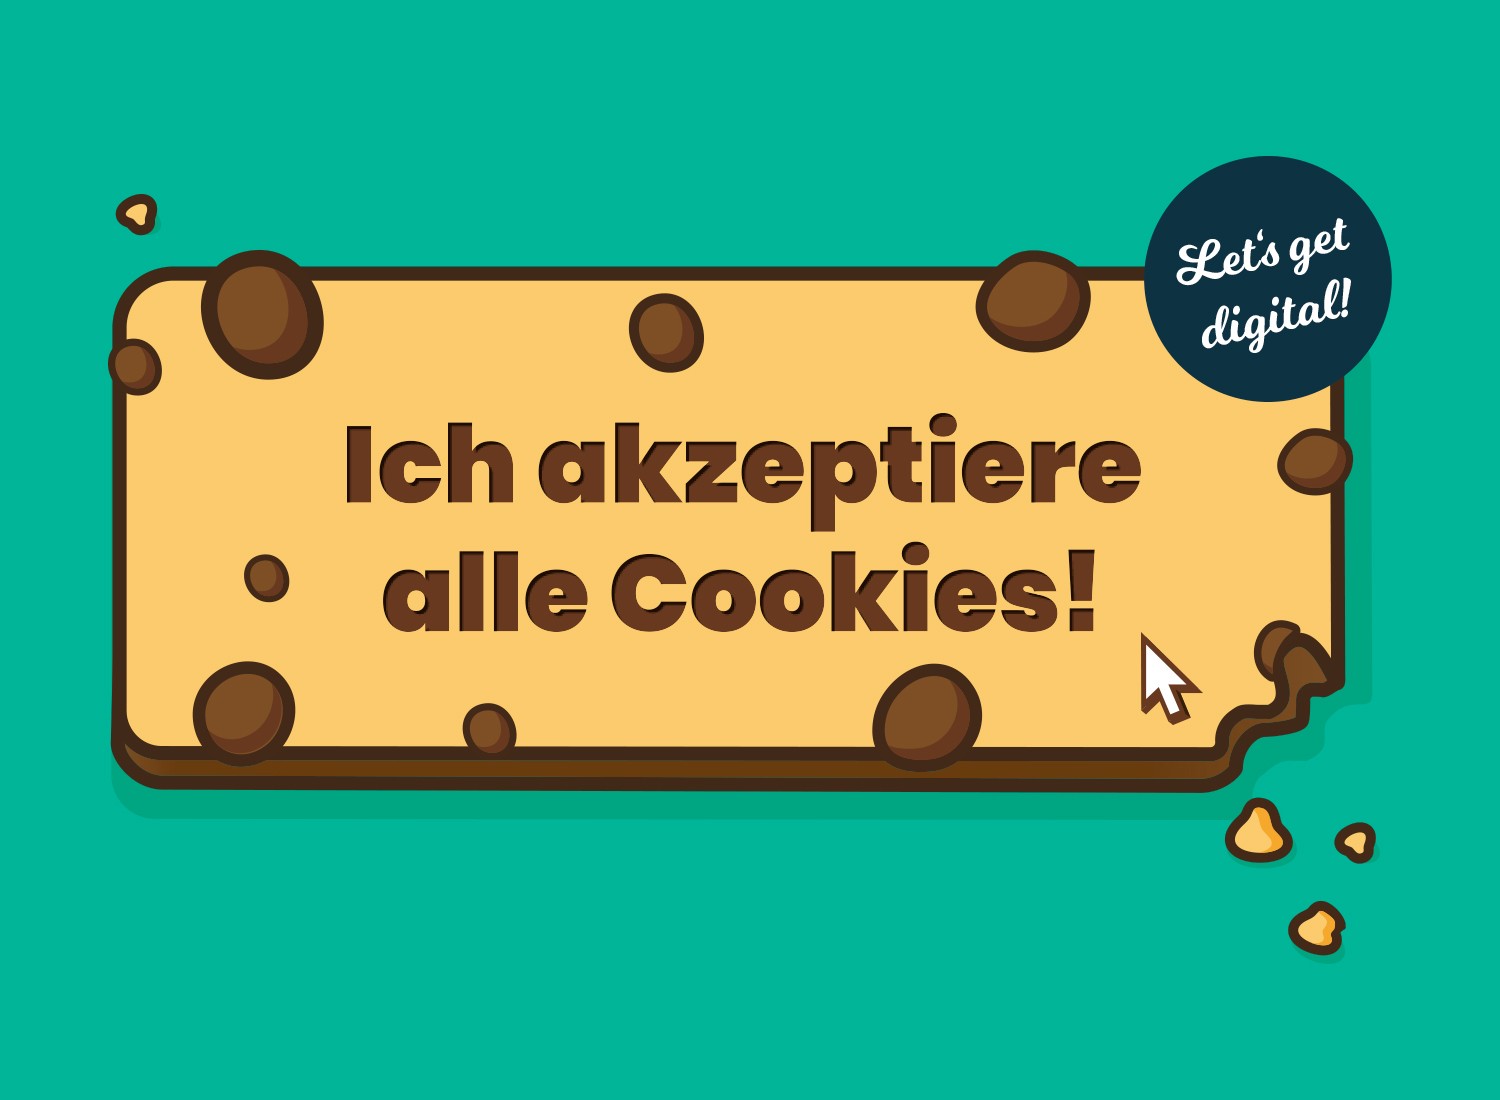 Featured image for “Neues Urteil vom BGH in Sachen Cookies”